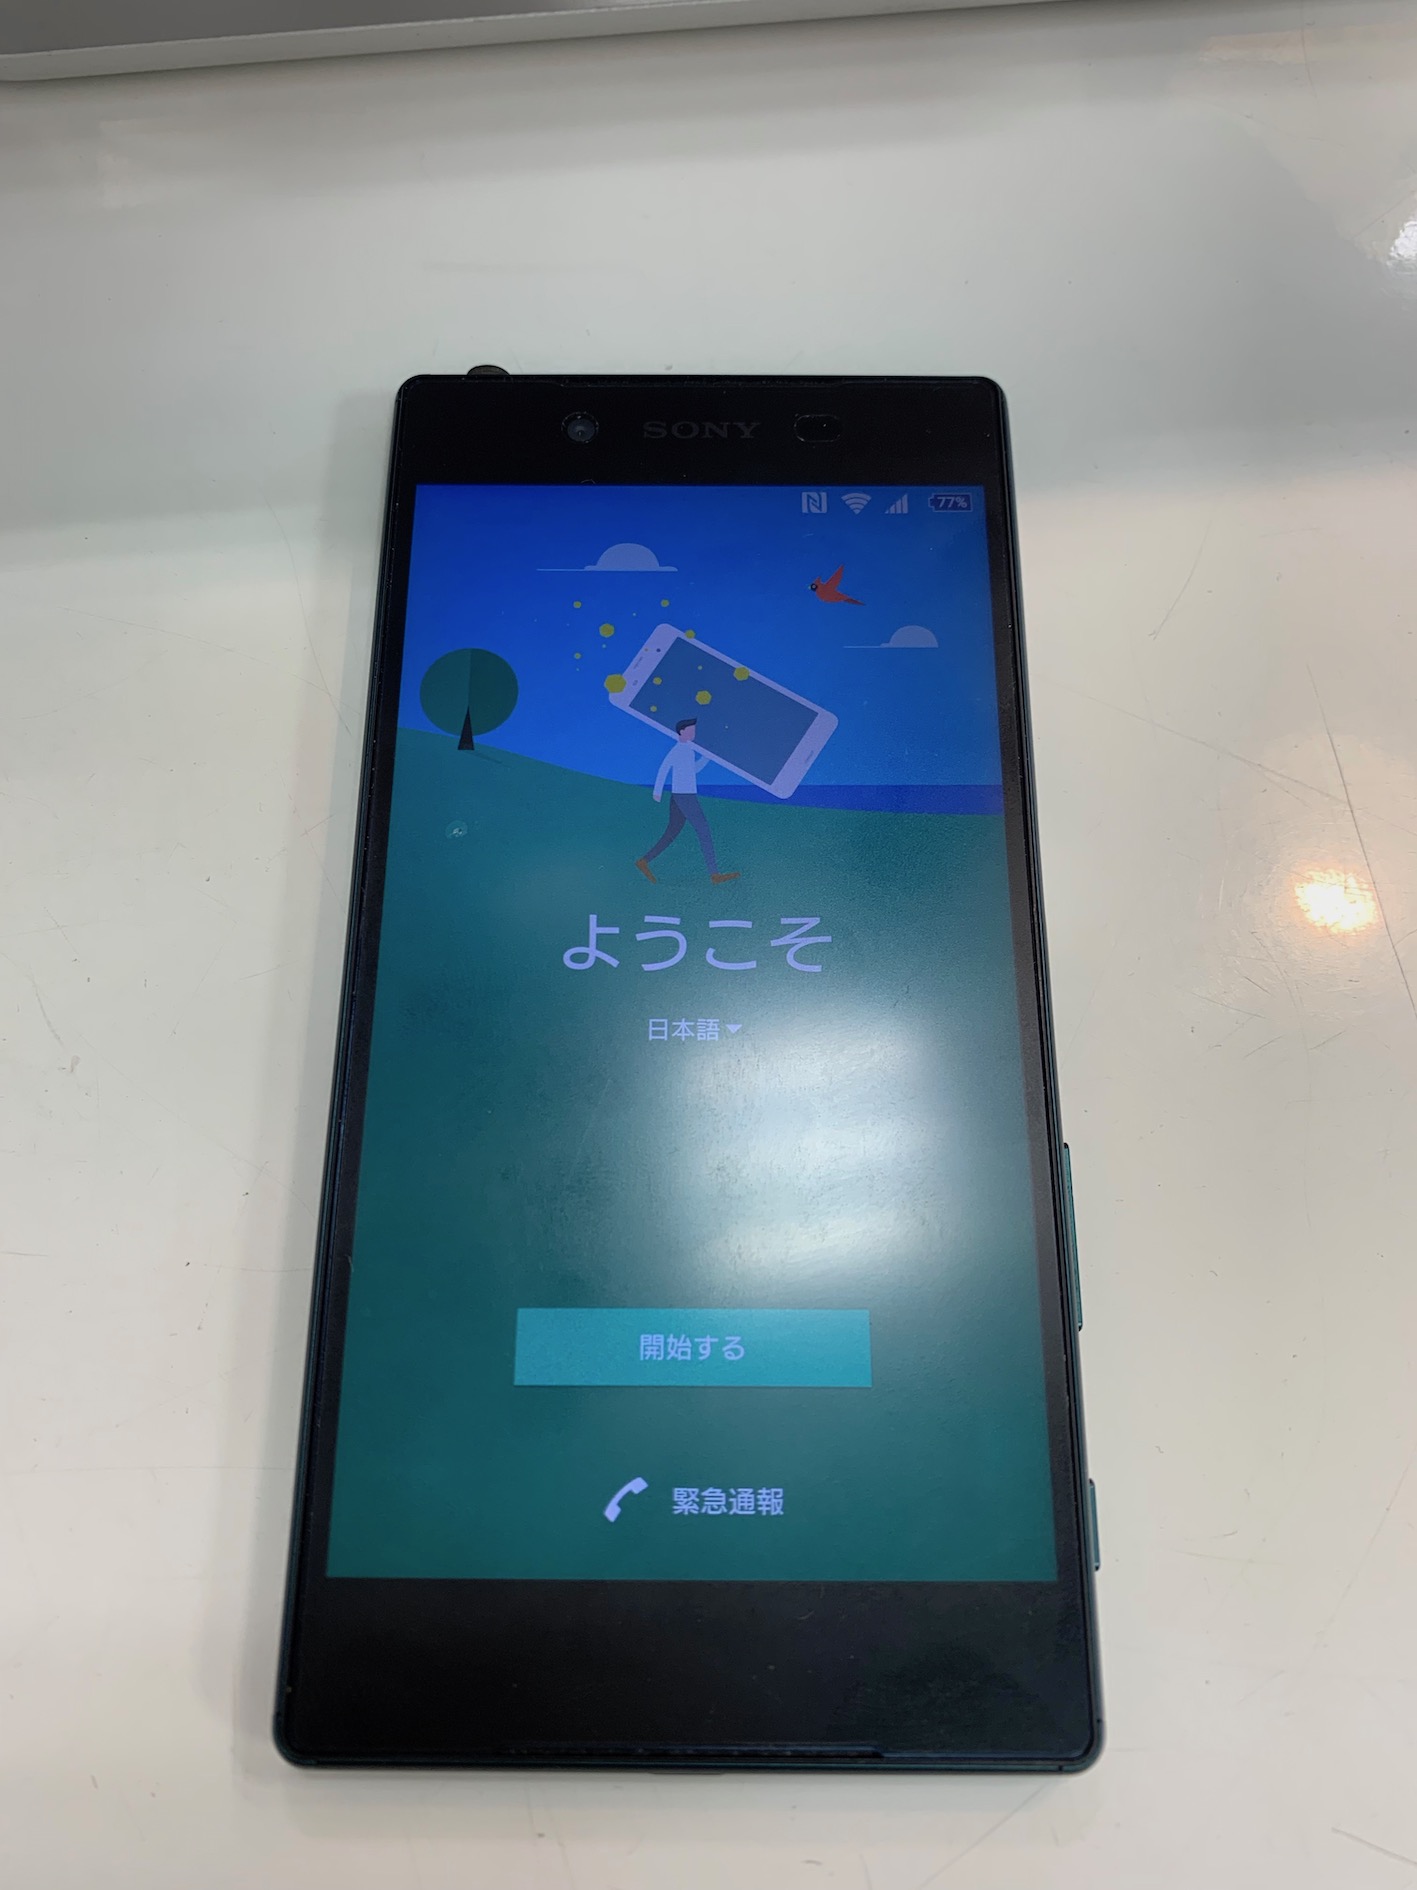 Android Os の不具合にある 再起動ループも修理可能です Iphone 修理 ジャパン 盛岡店 スタッフブログ